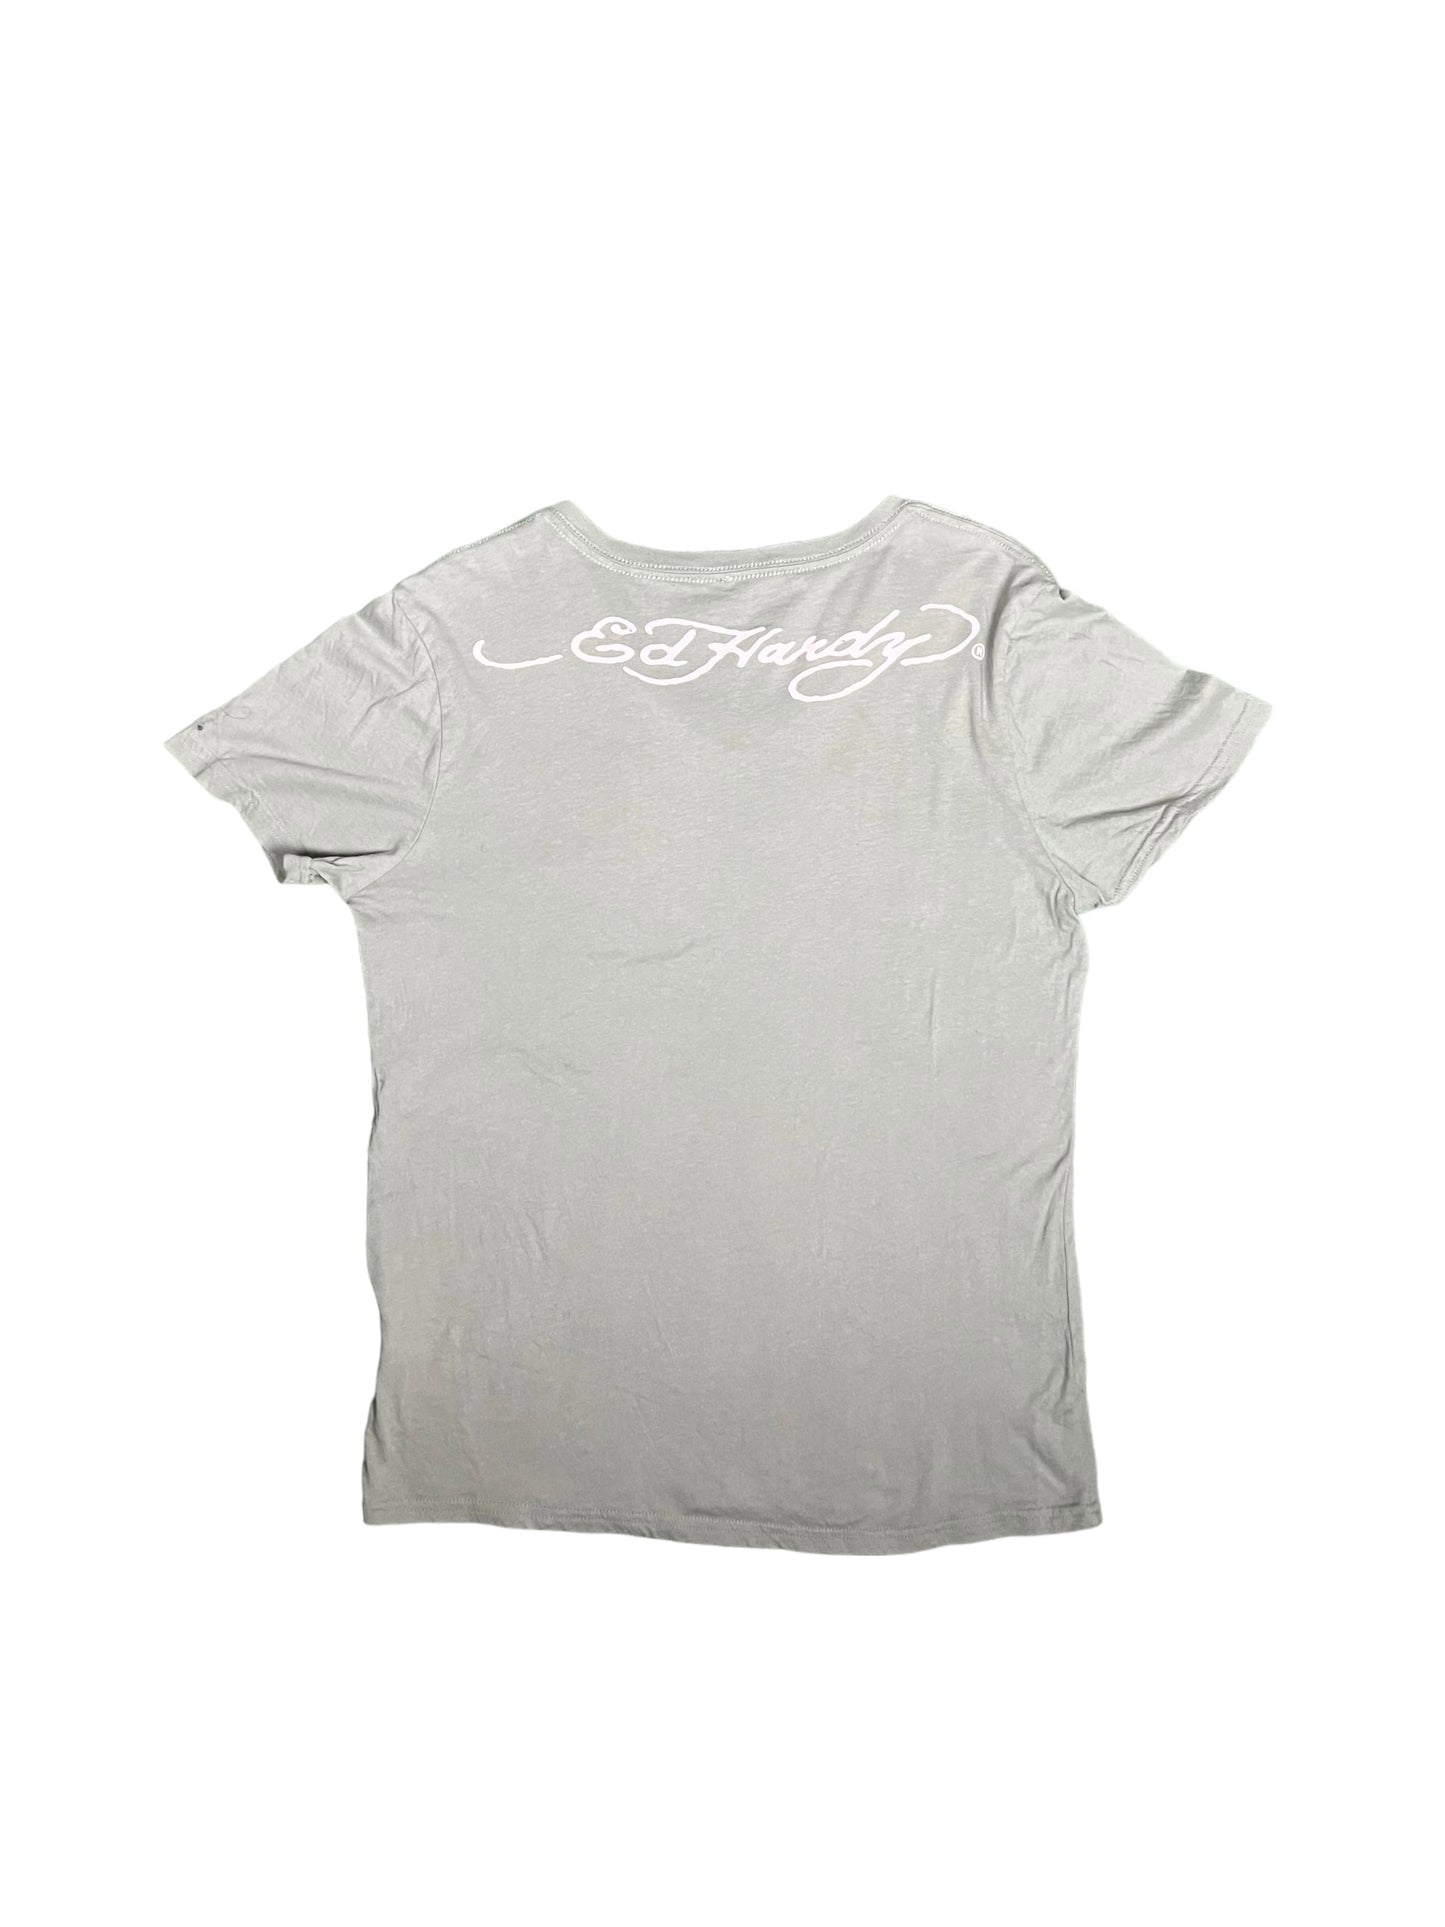 Ed Hardy by Christian Audigier Men's V-Neck T-Shirt